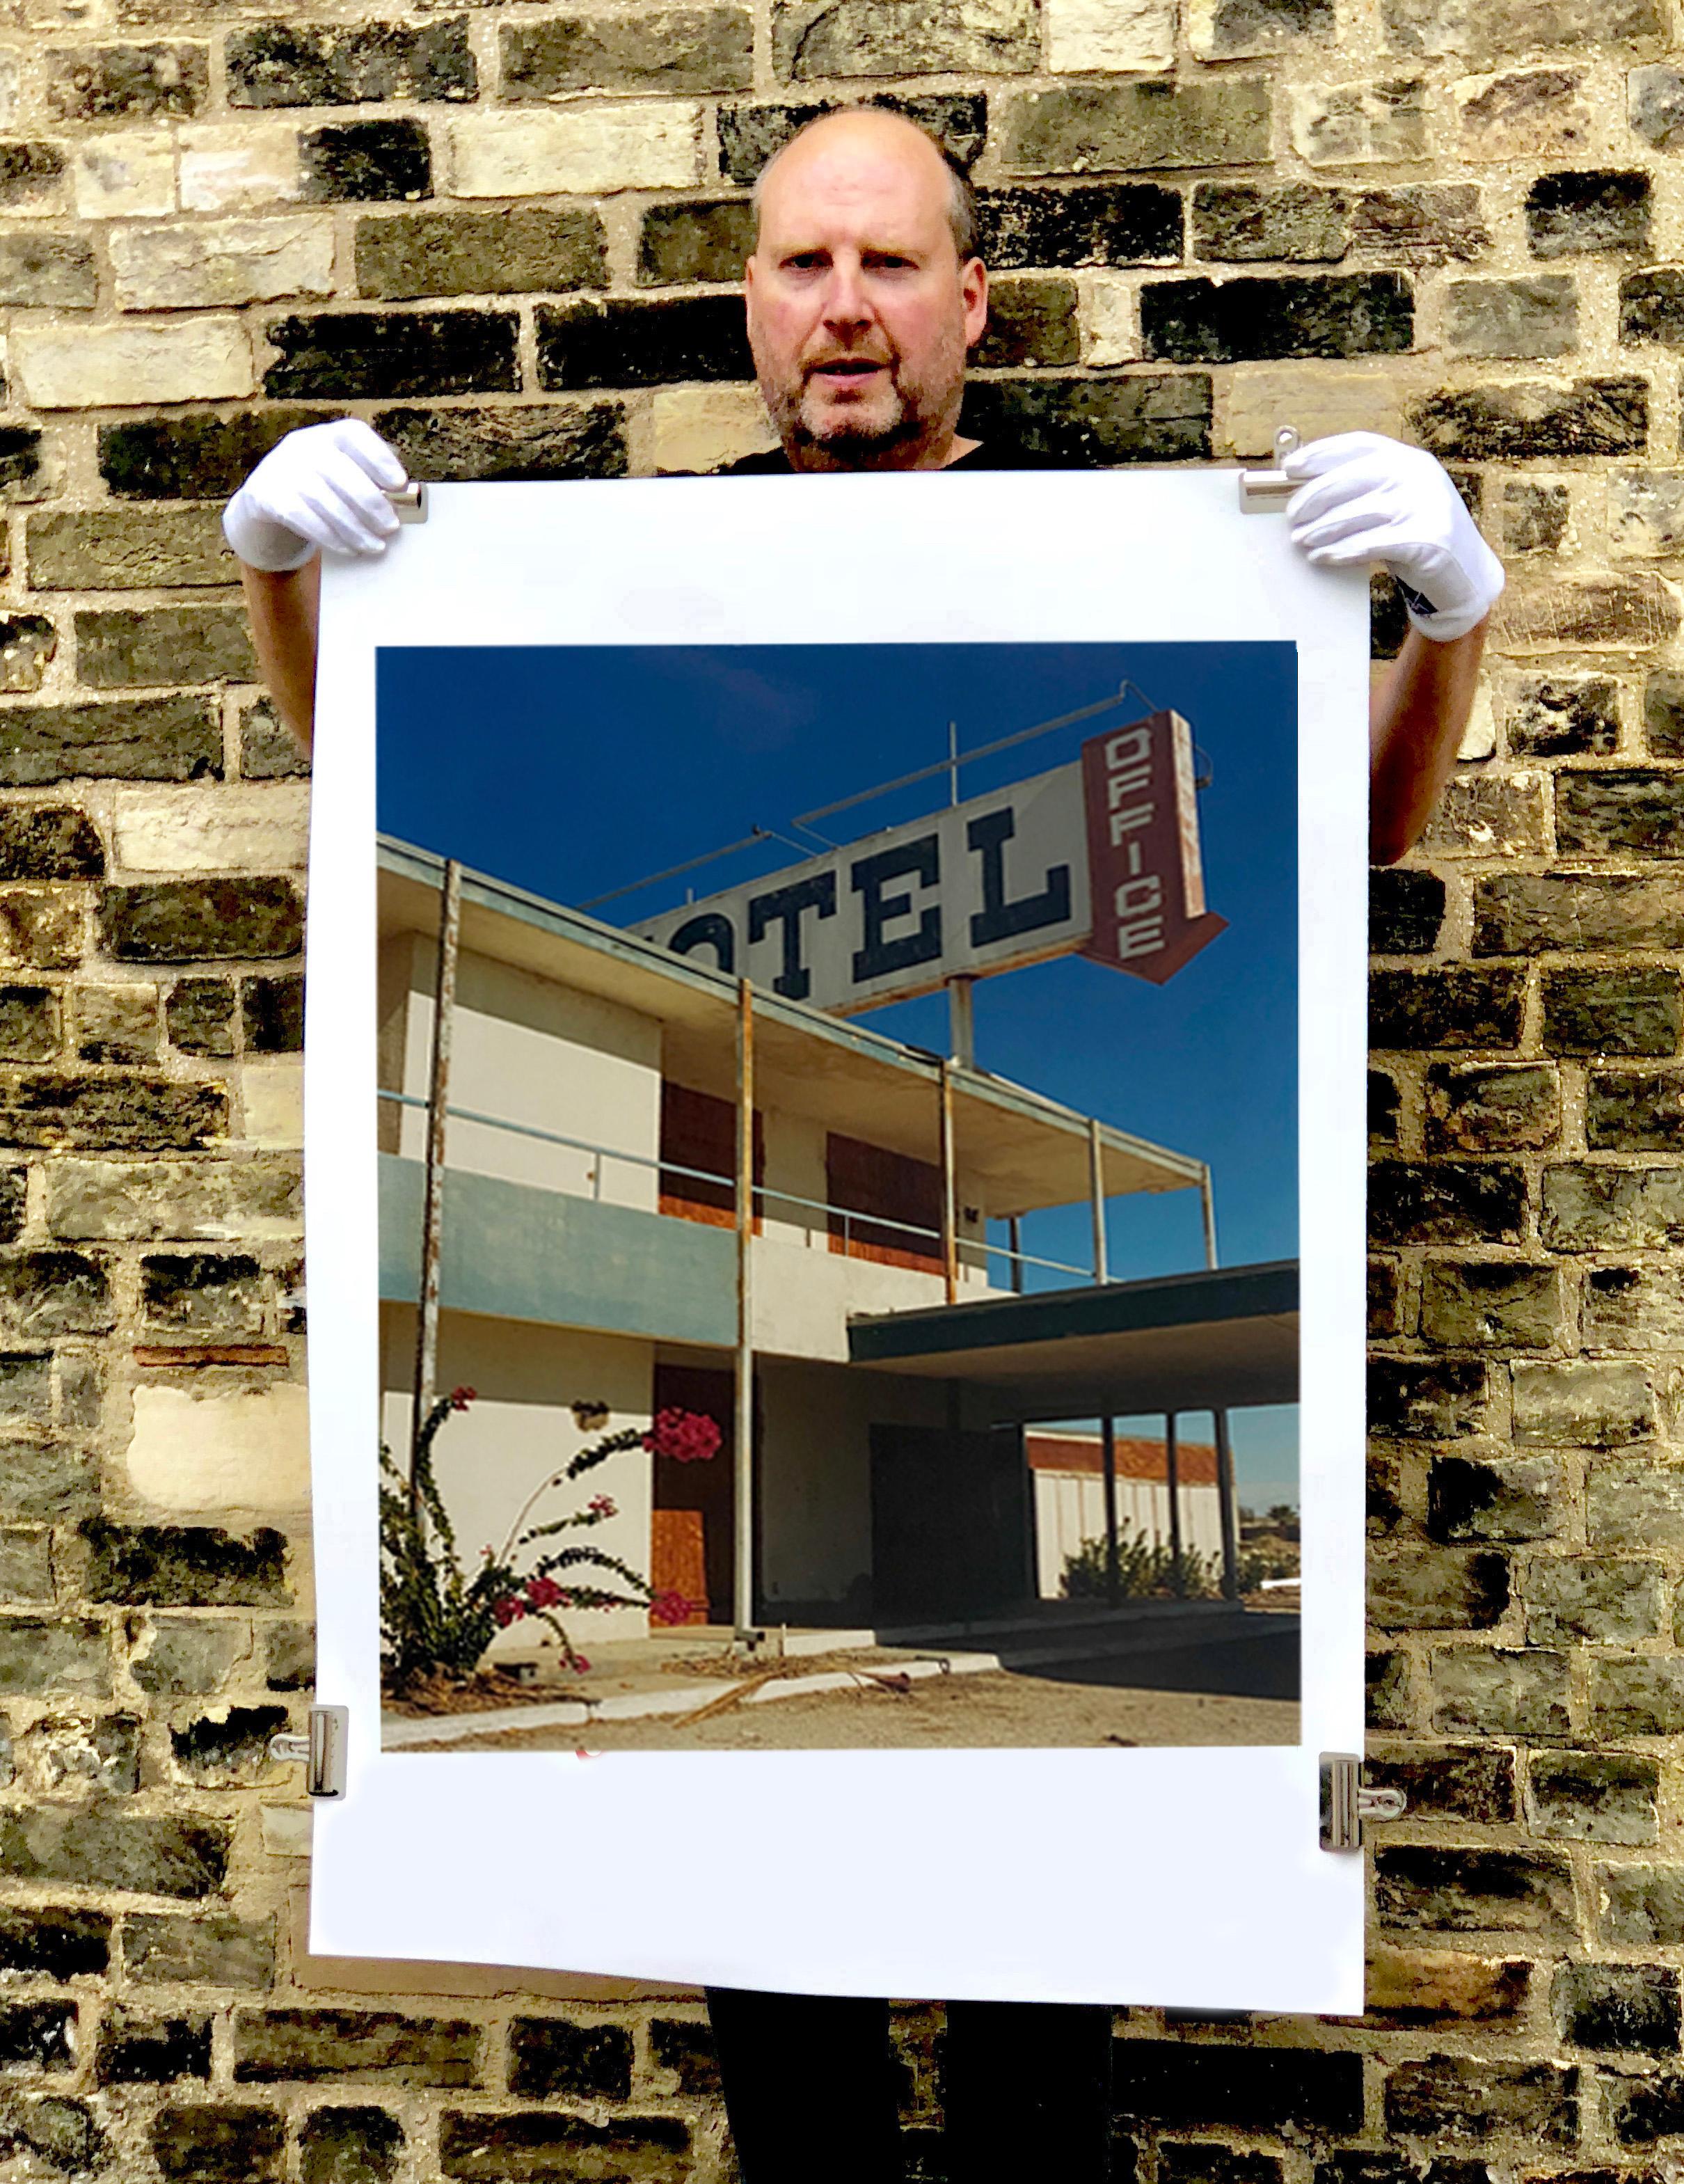 North Shore Motel Office II, Salton Sea, Kalifornien – architektonisches Farbfoto (Braun), Figurative Photograph, von Richard Heeps